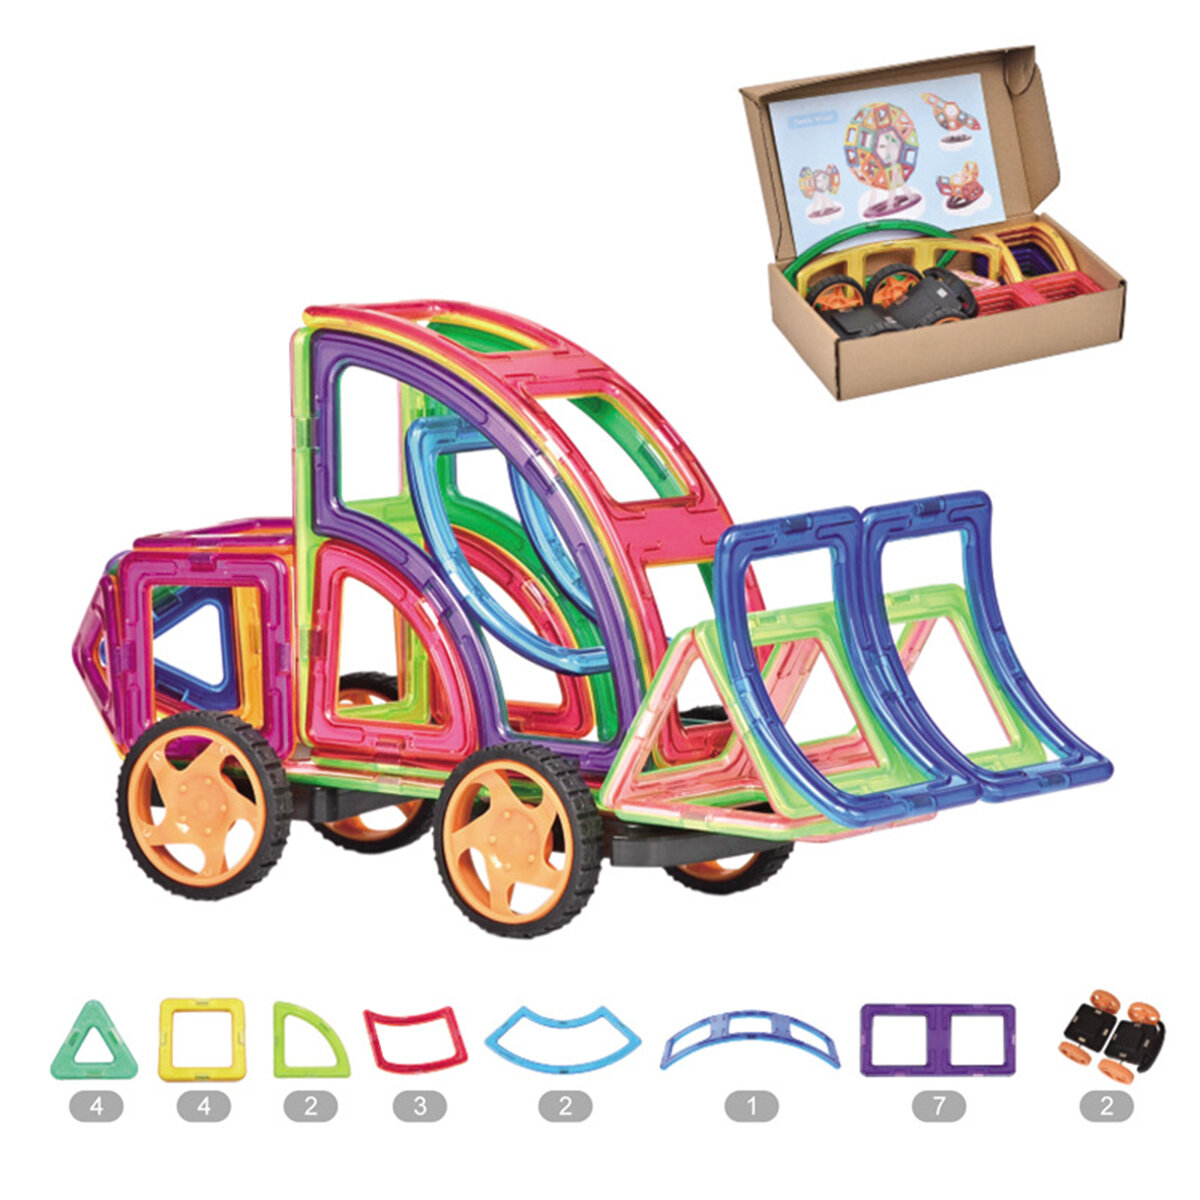 

25шт магнитные блоки строительный набор DIY магнитные сборки игрушки для детей развивающие